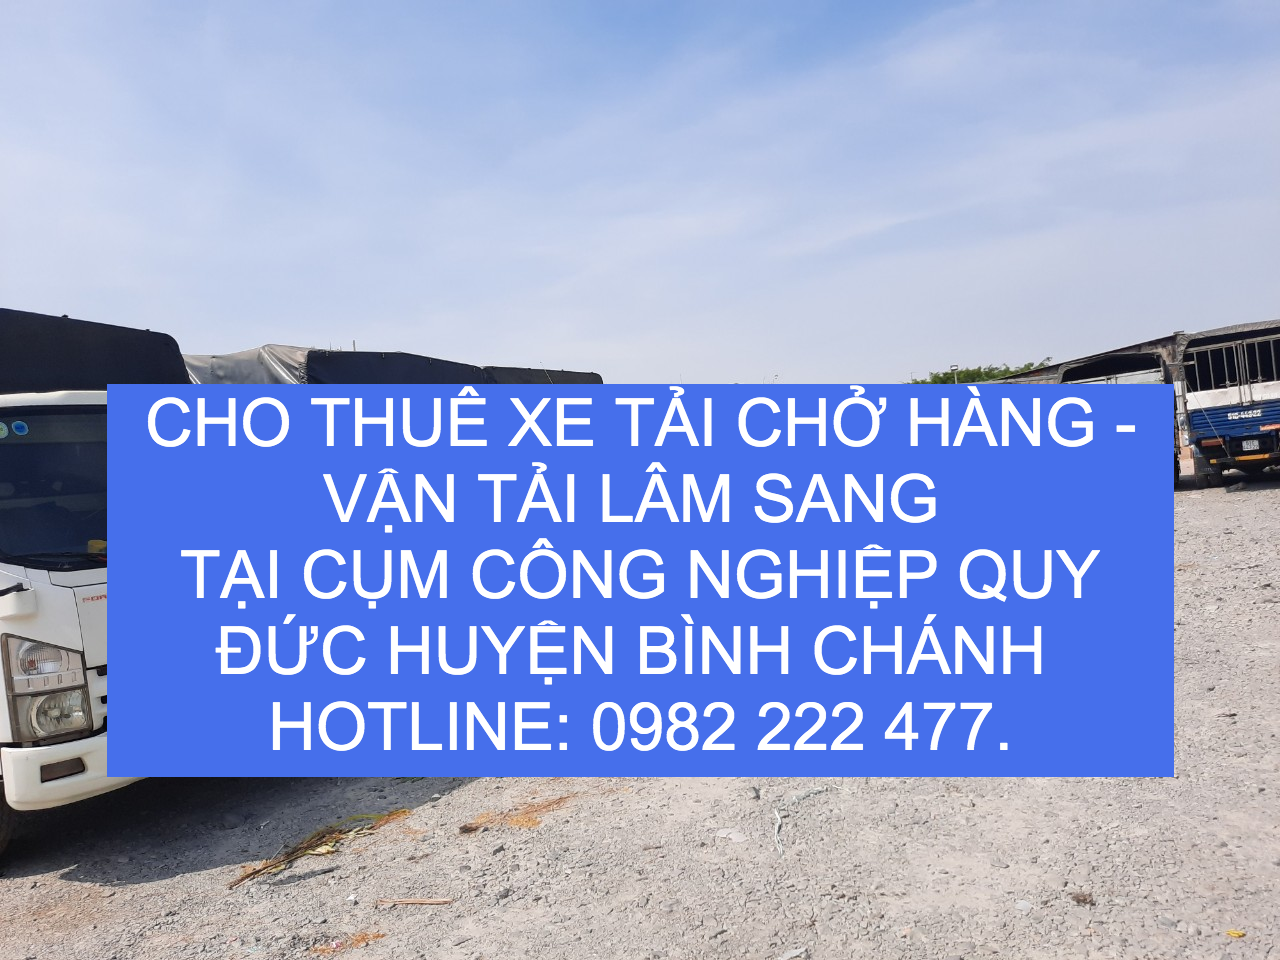 Cho thuê xe tải chở hàng tại xã Quy Đức Huyện Bình Chánh–TPHCM